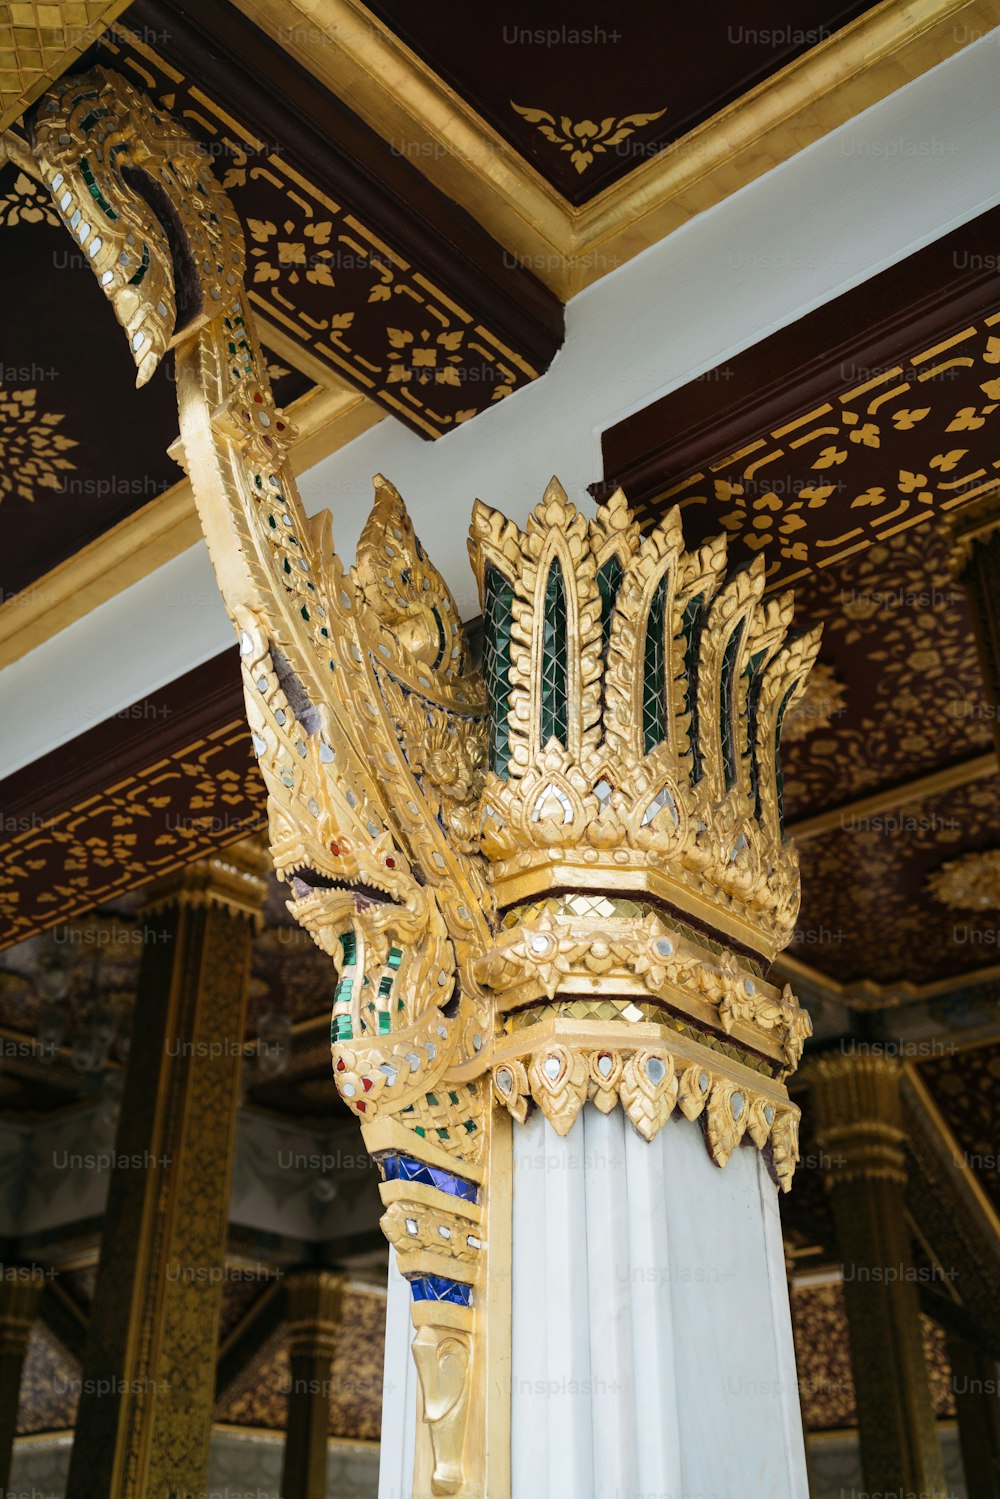 그 위에 왕관이 있는 금색과 흰색 기둥